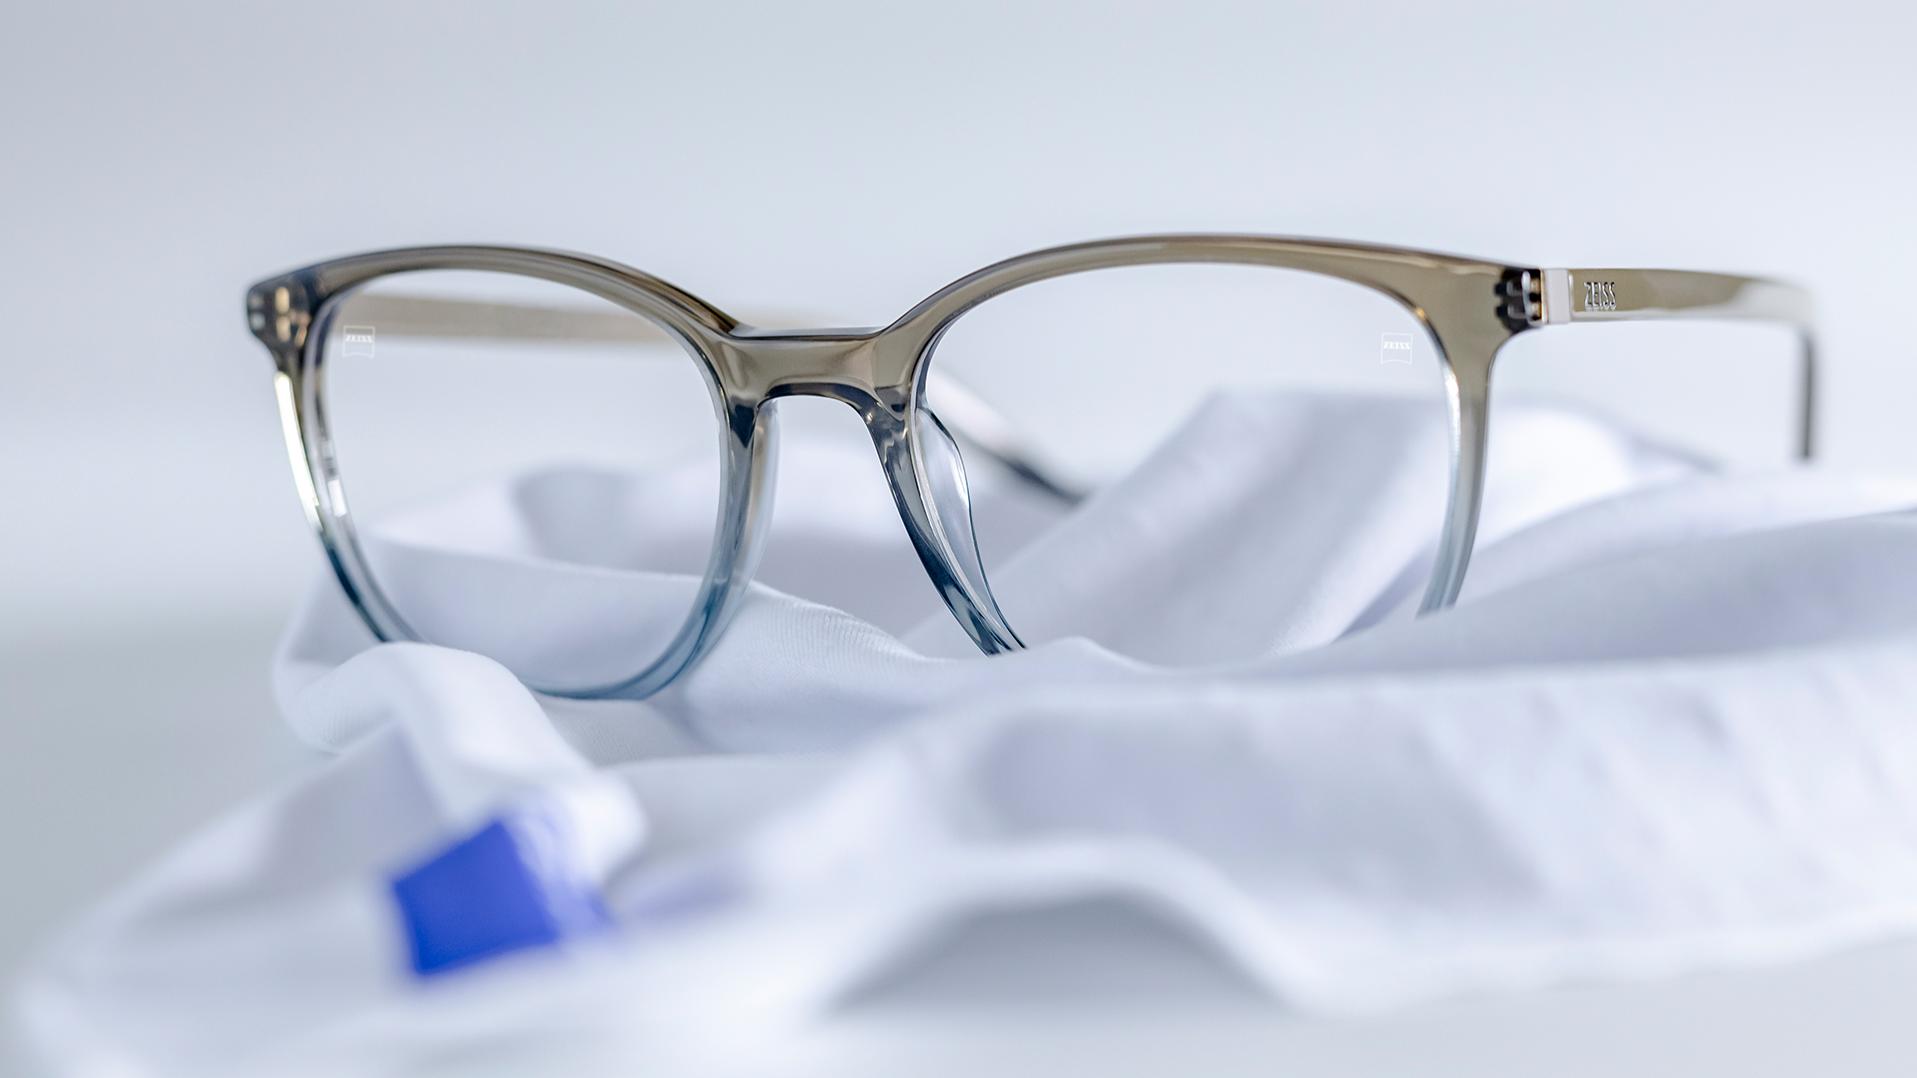 Et par briller med grå-blåt stel og ZEISS glas med DuraVision®-coating ligger på en hvid mikrofiberklud.